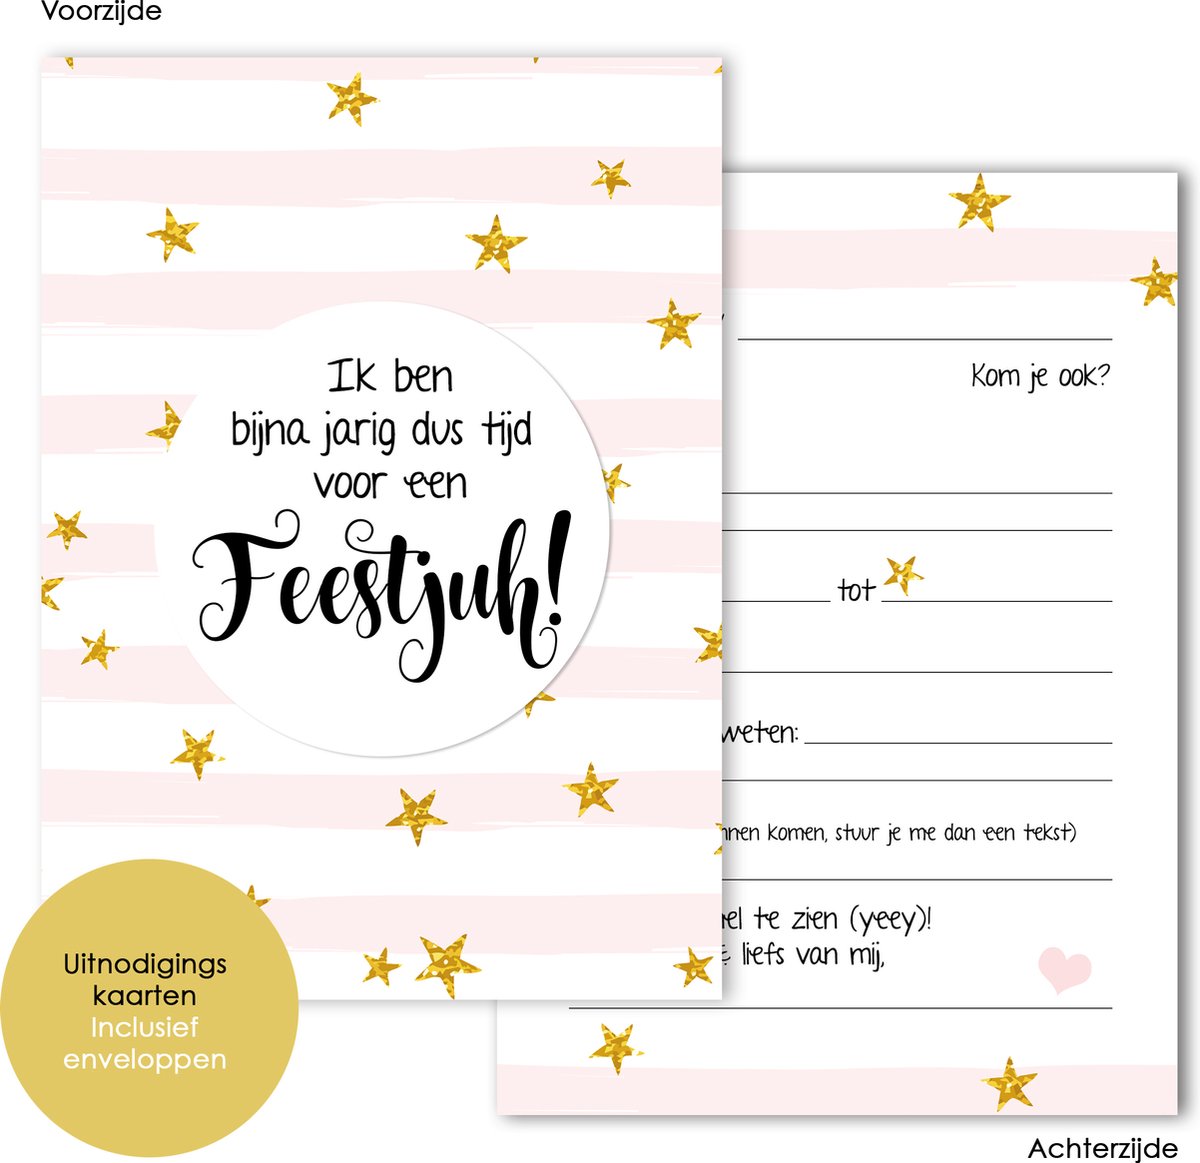 8 invitations avec enveloppes - Invitation anniversaire - fête - cartes